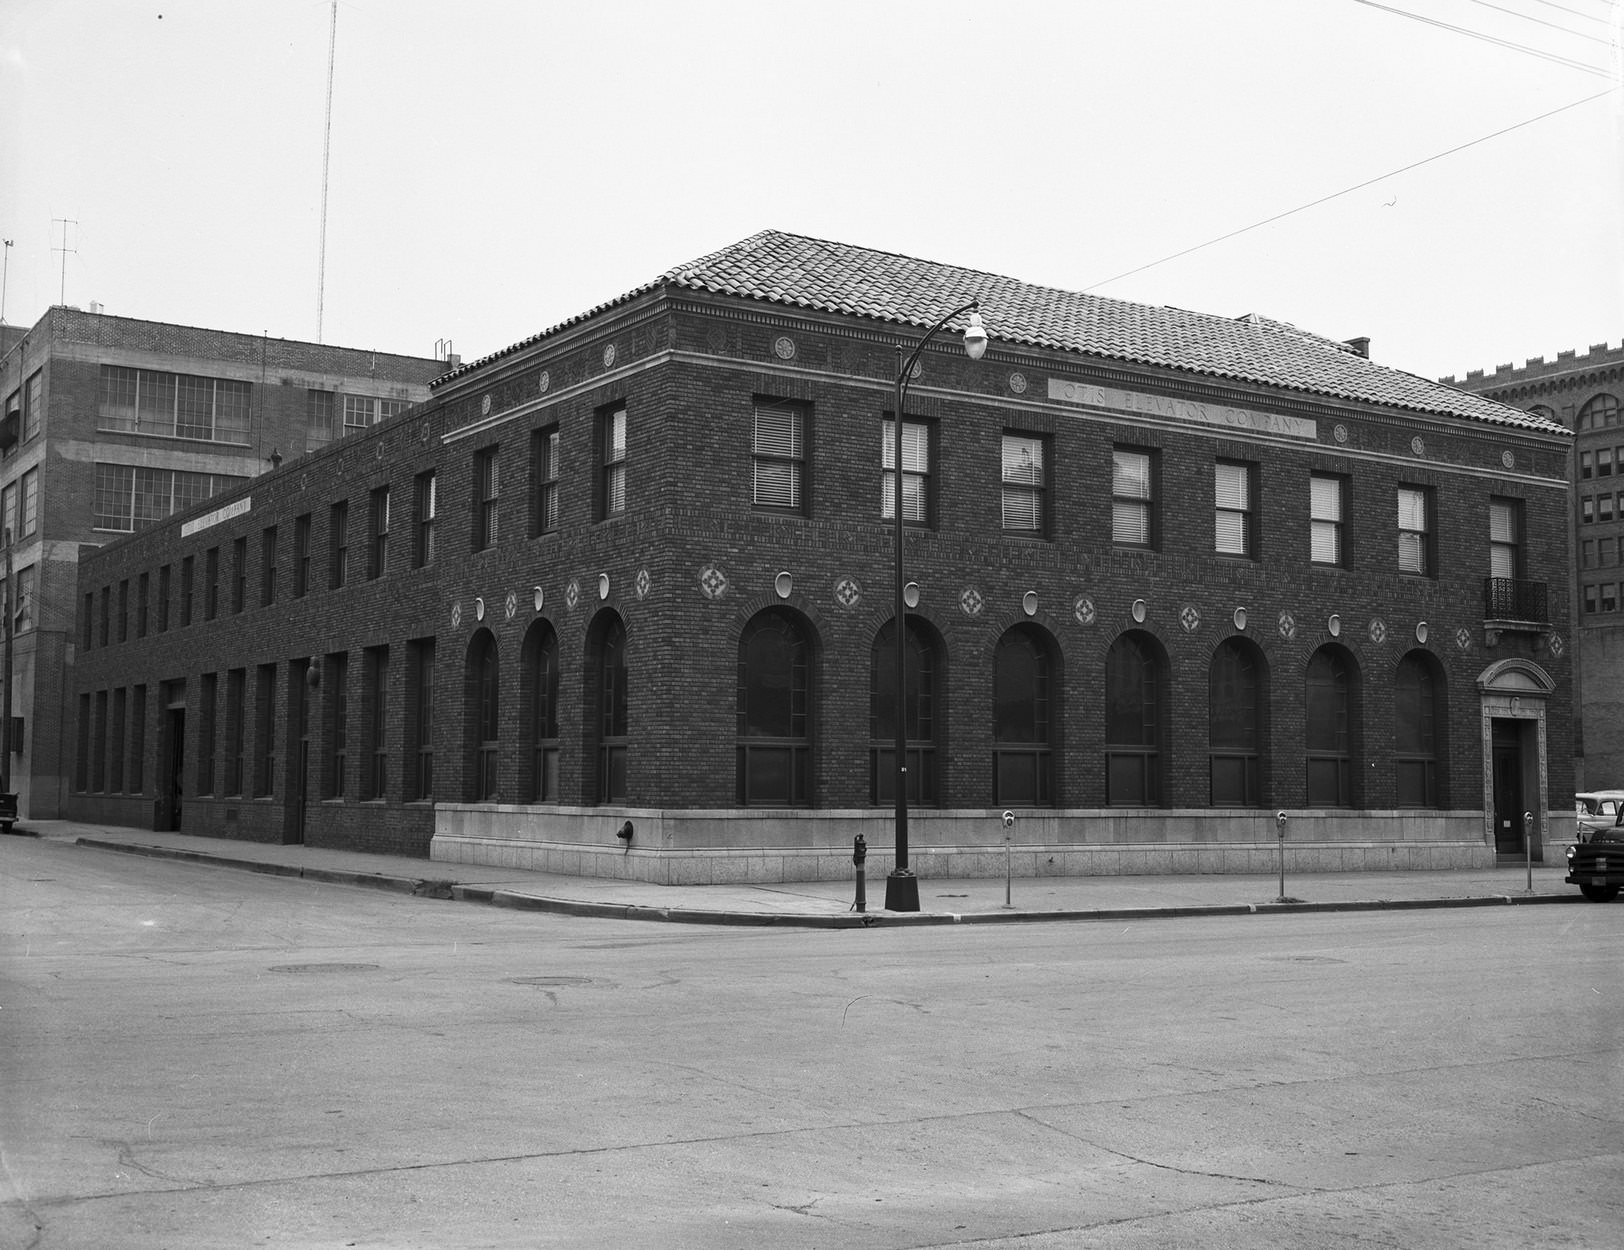 Otis Elevator Company building, Dallas, Texas, 1953